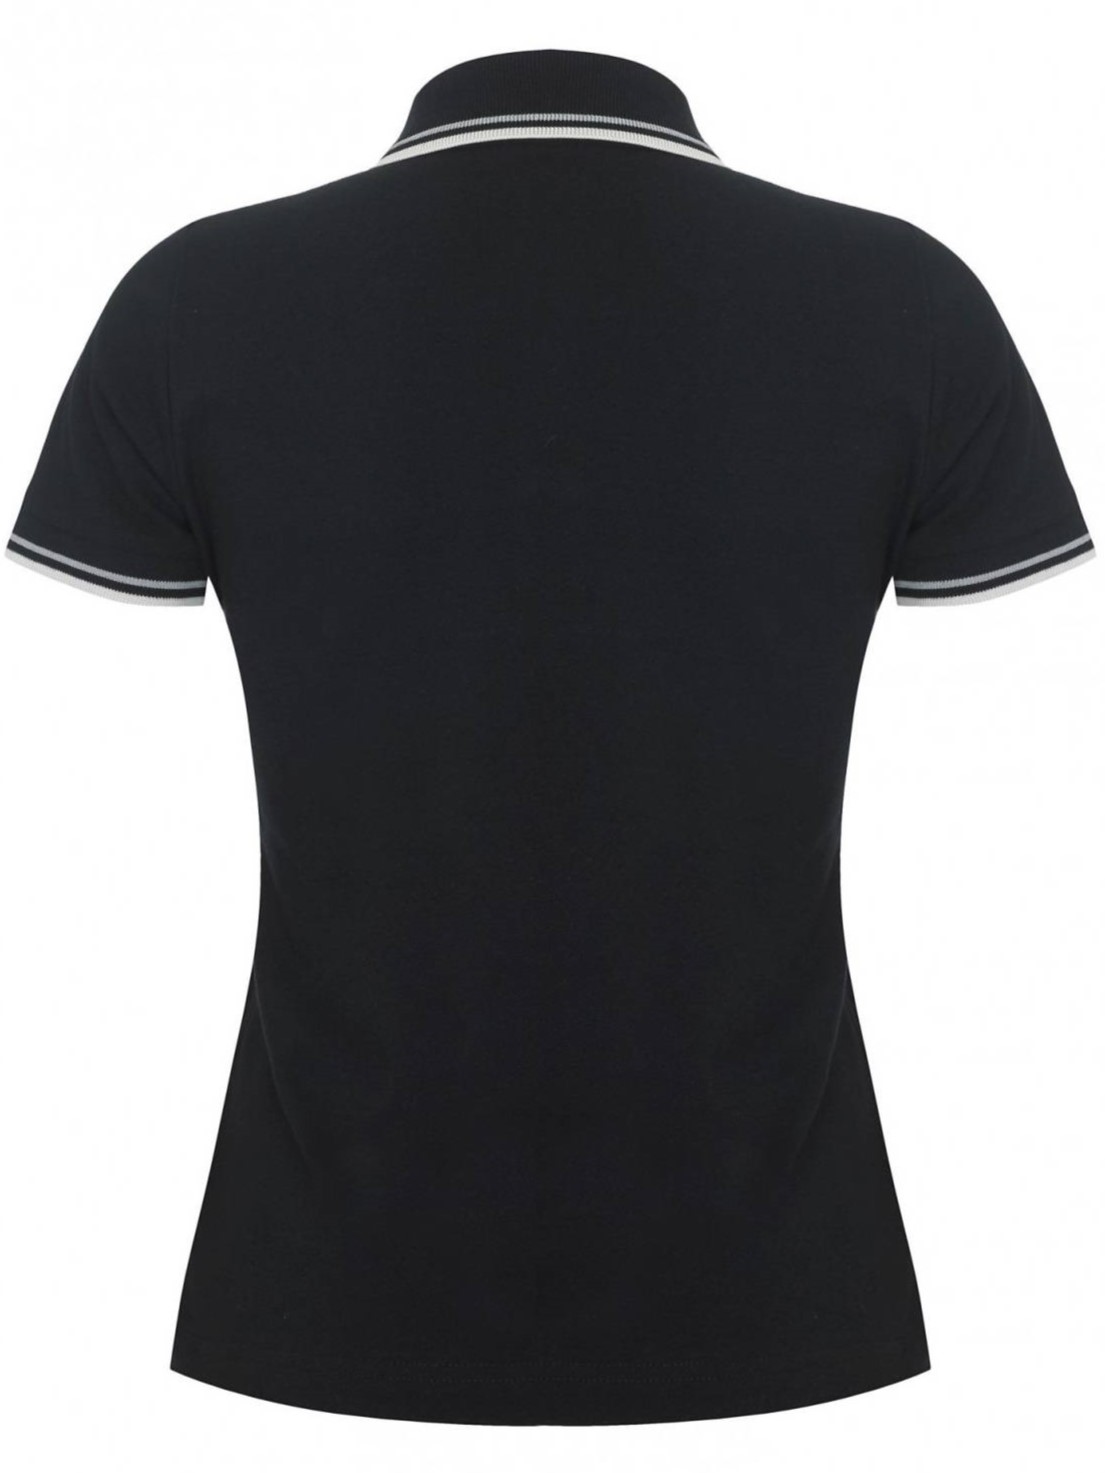 Женская рубашка поло Merc Rita, black (черная)